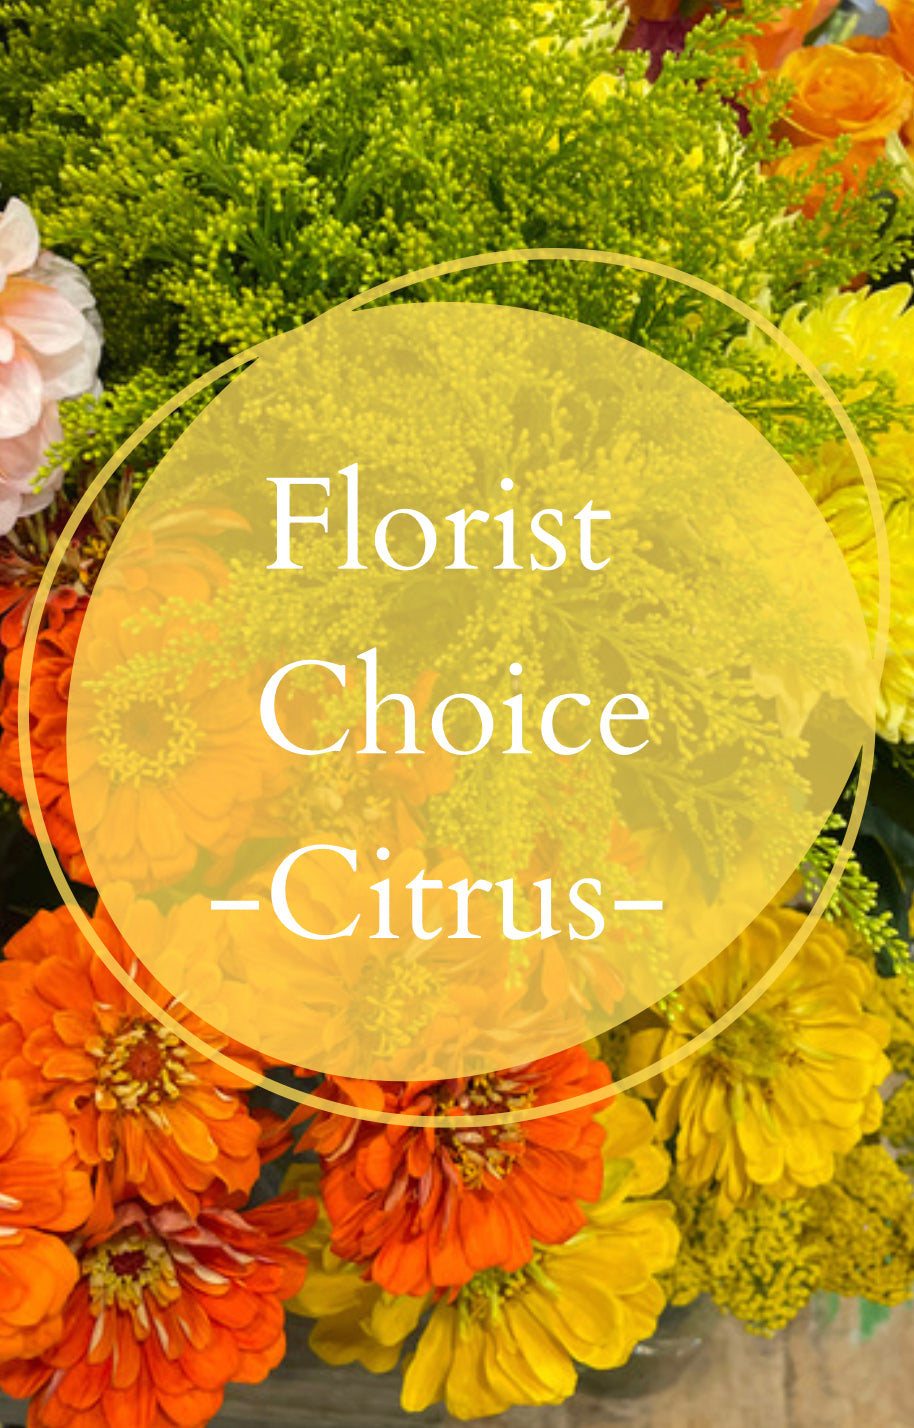 Florist Choice - Citrus